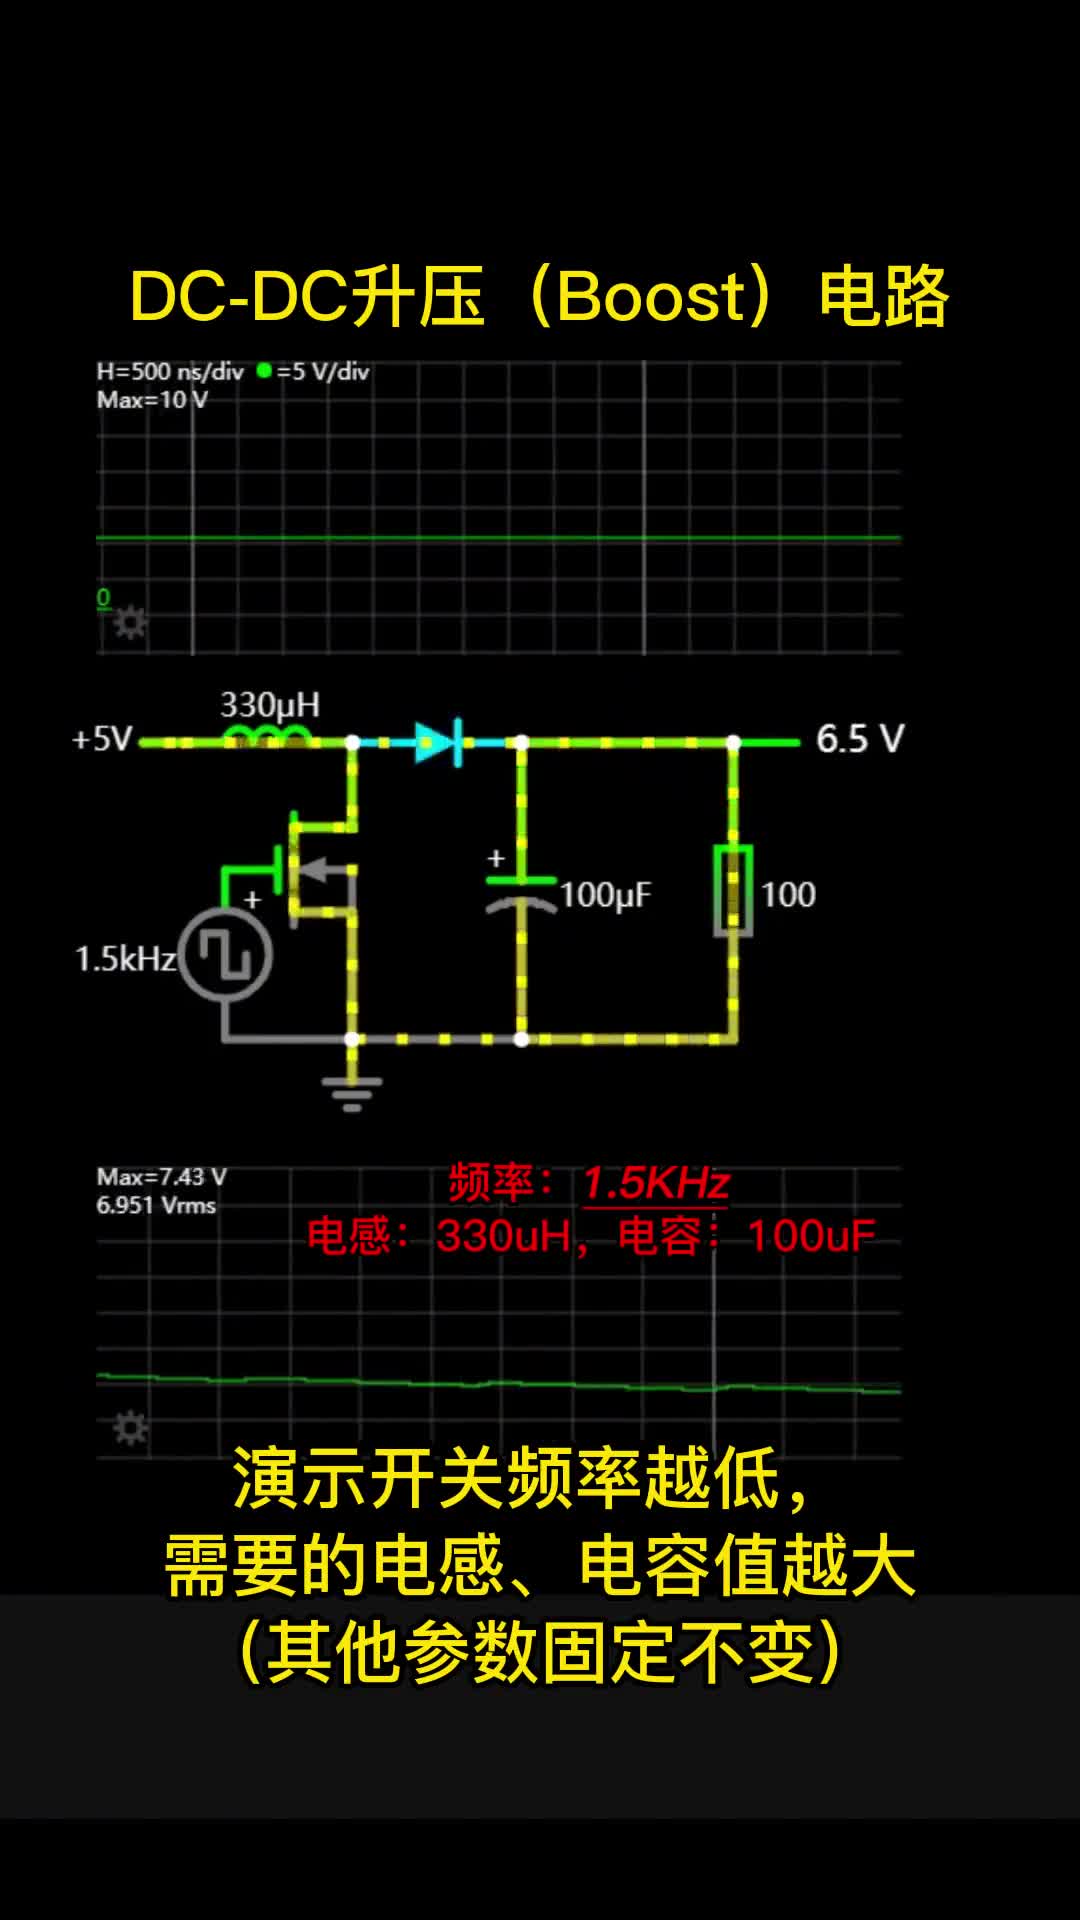 00003 DC-DC升压(Boost)电路，演示开关频率越低，稳定输出需要的电感，电容值越大（其他参数固定不